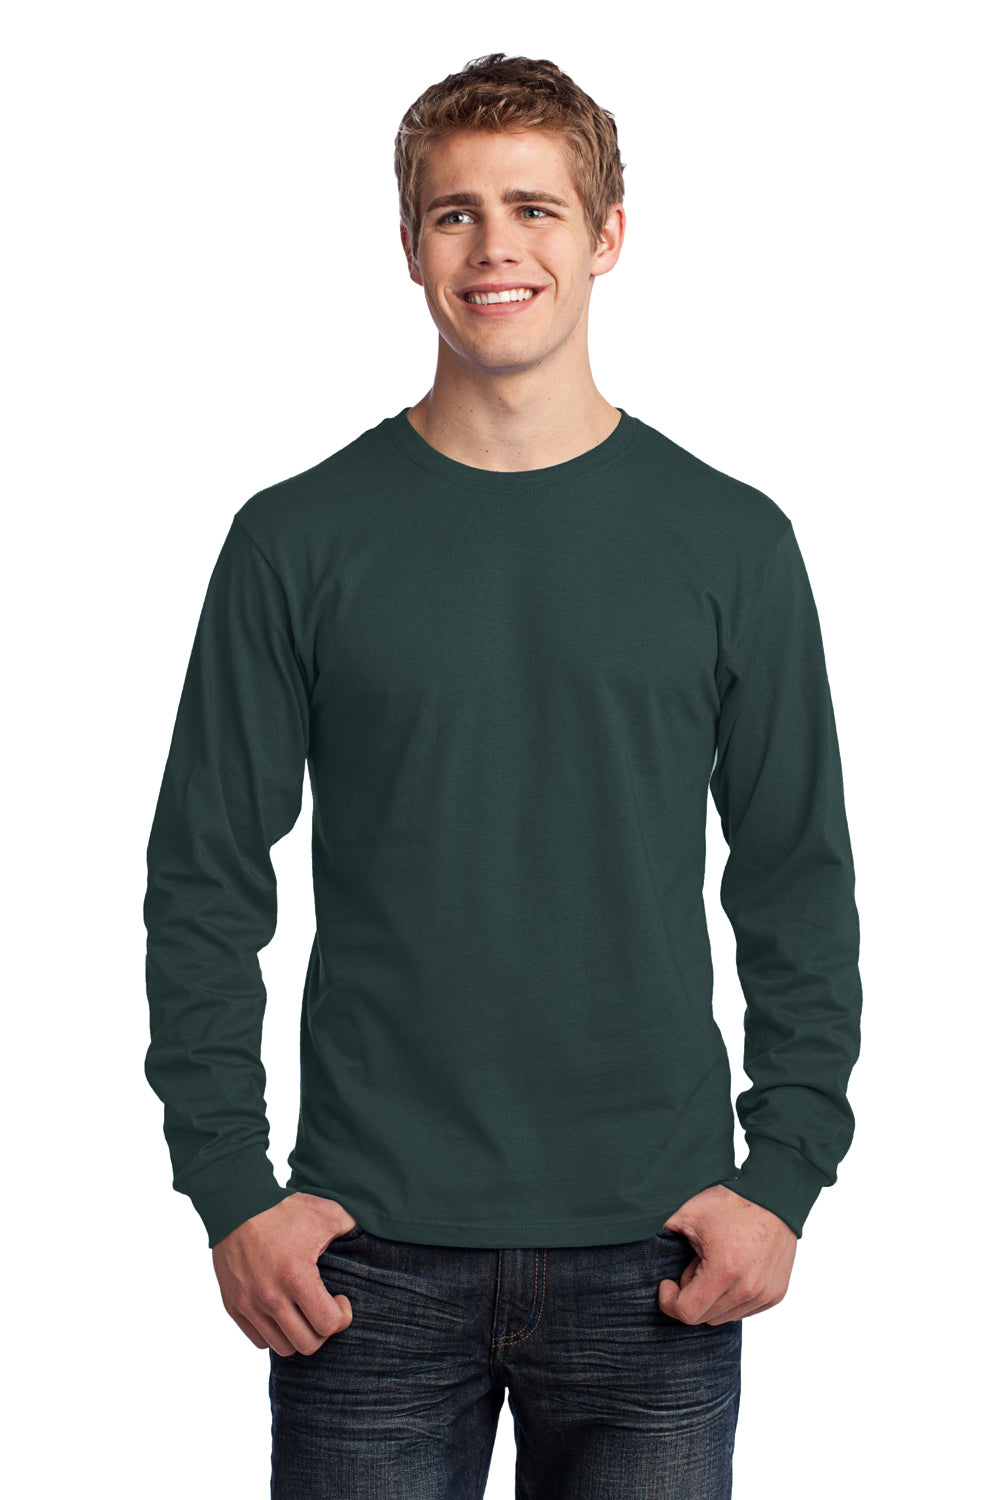 Port & Company PC54LS Mens Core Long Sleeve Crewneck T-Shirt Dark Green Front